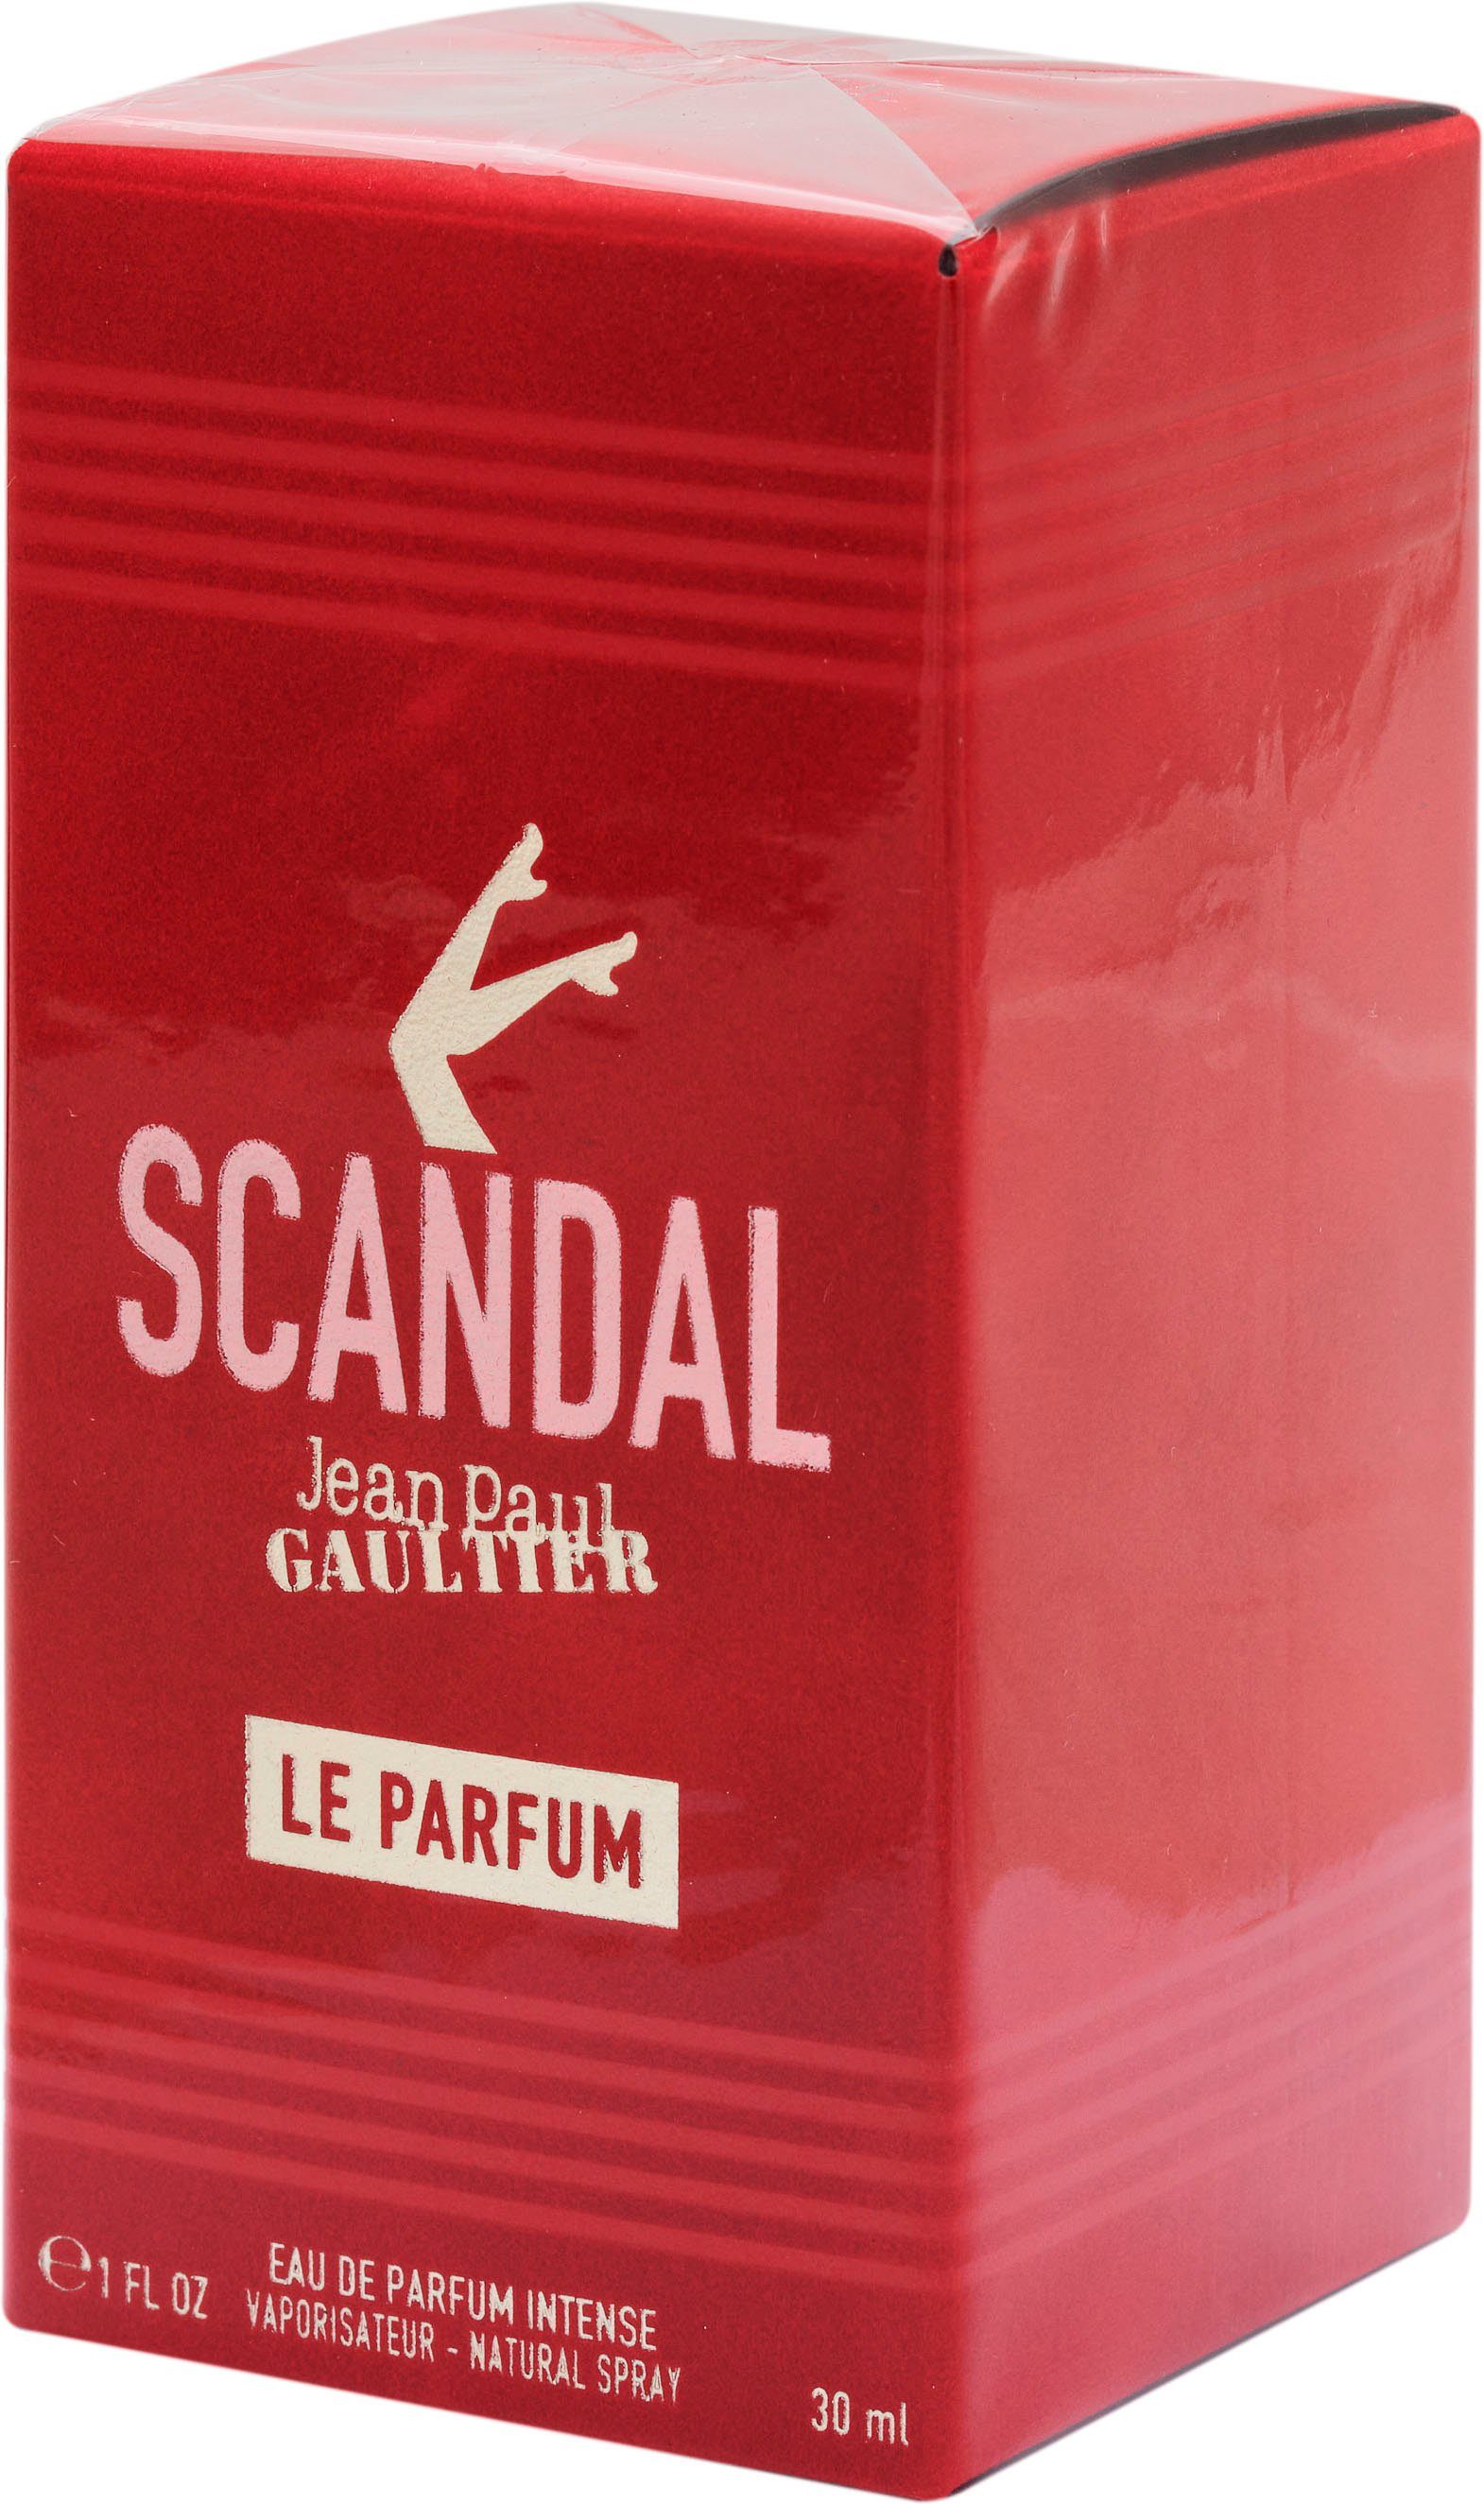 JEAN PAUL Parfum Le Eau de GAULTIER Parfum Scandal